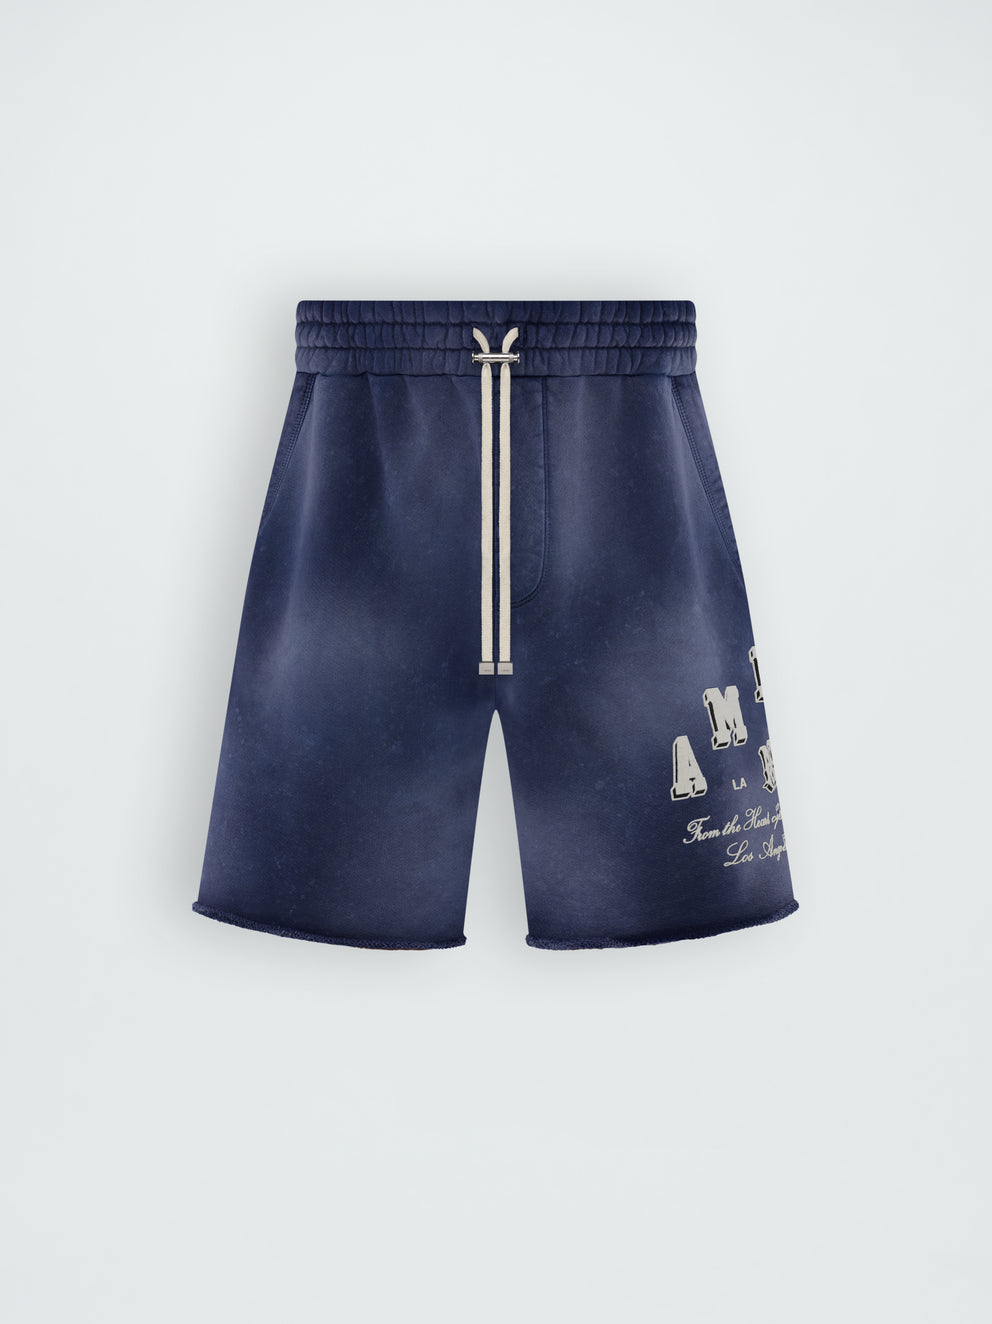 Pantalones Cortos Amiri Vintage Collegiates Hombre Azules | 1764GXFIO